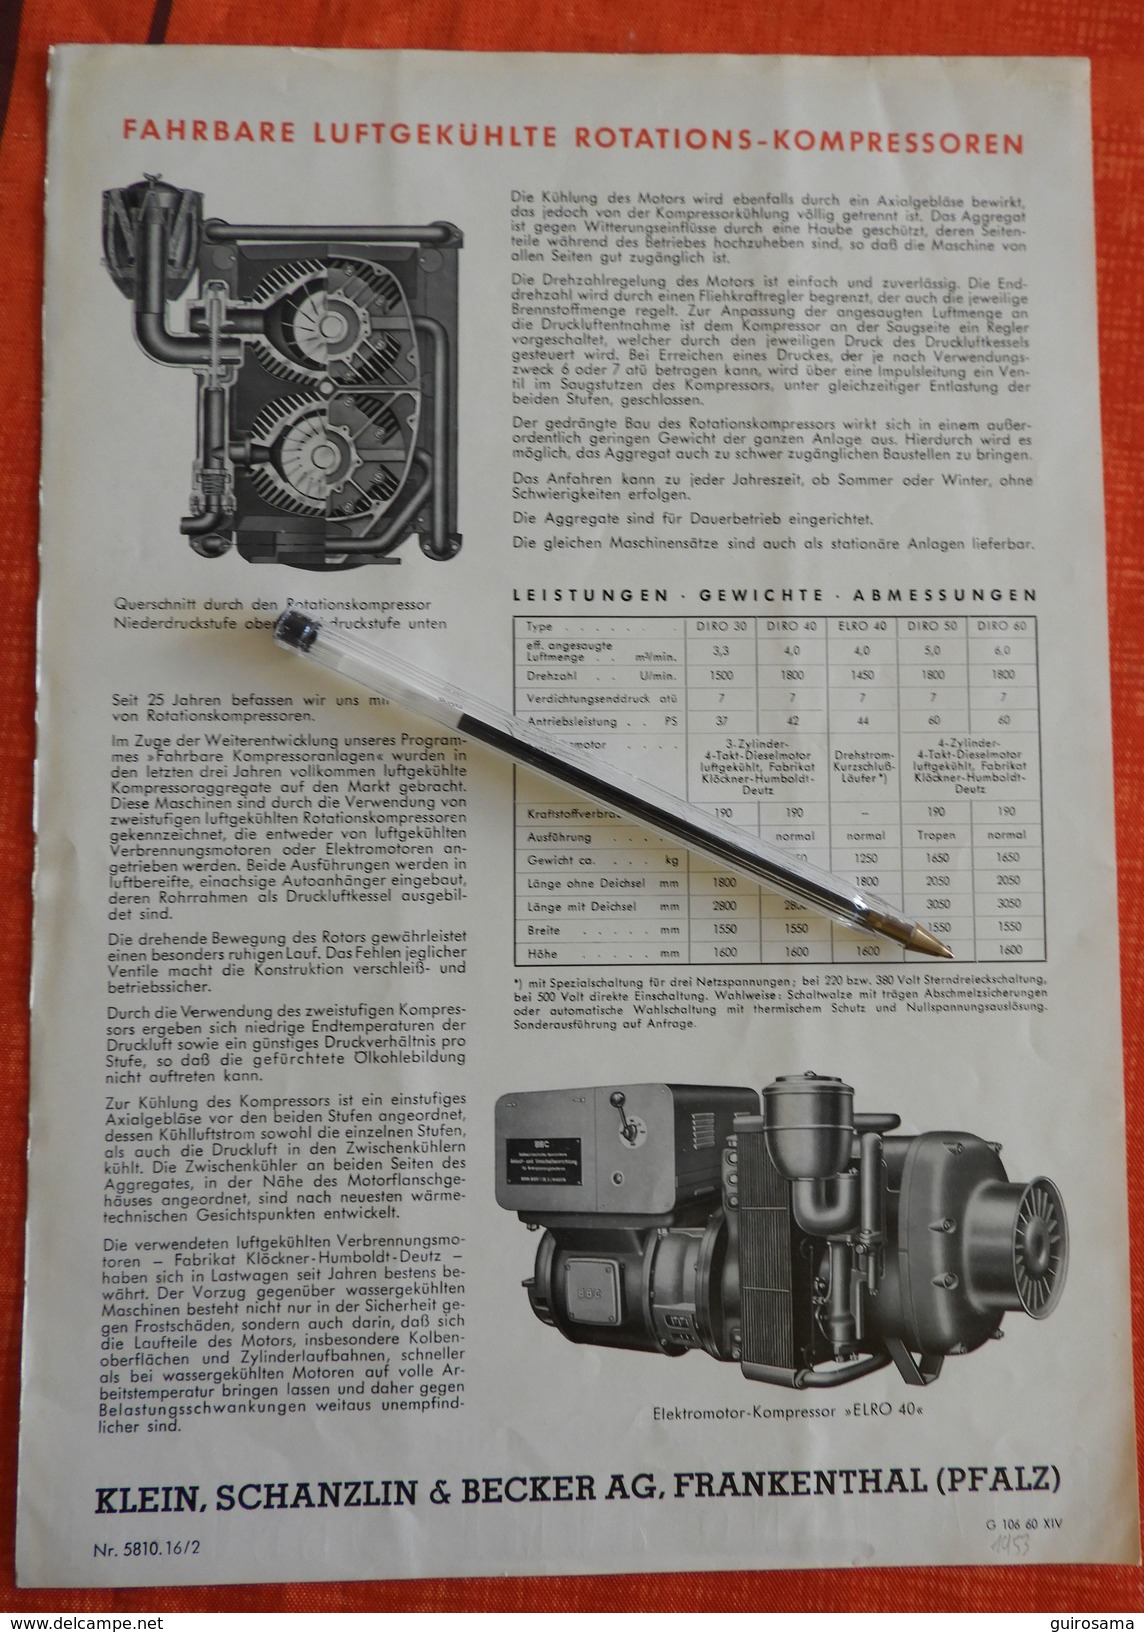 Lot de 7 documents publicitaires sur le béton - années 30 à 60 - Set mit 7 Werbeanzeigen auf Beton